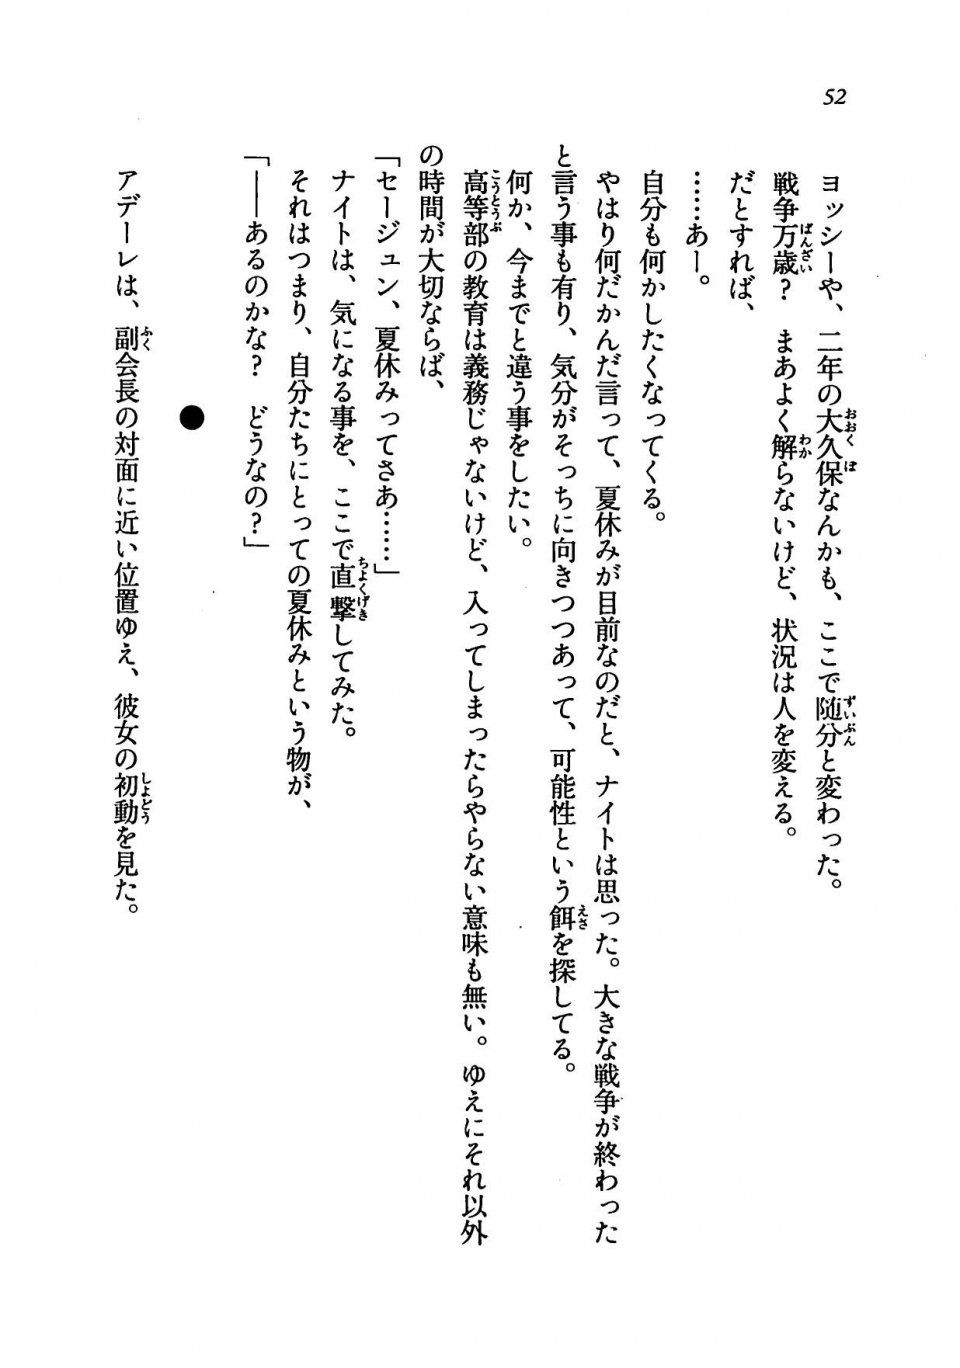 Kyoukai Senjou no Horizon LN Vol 19(8A) - Photo #52